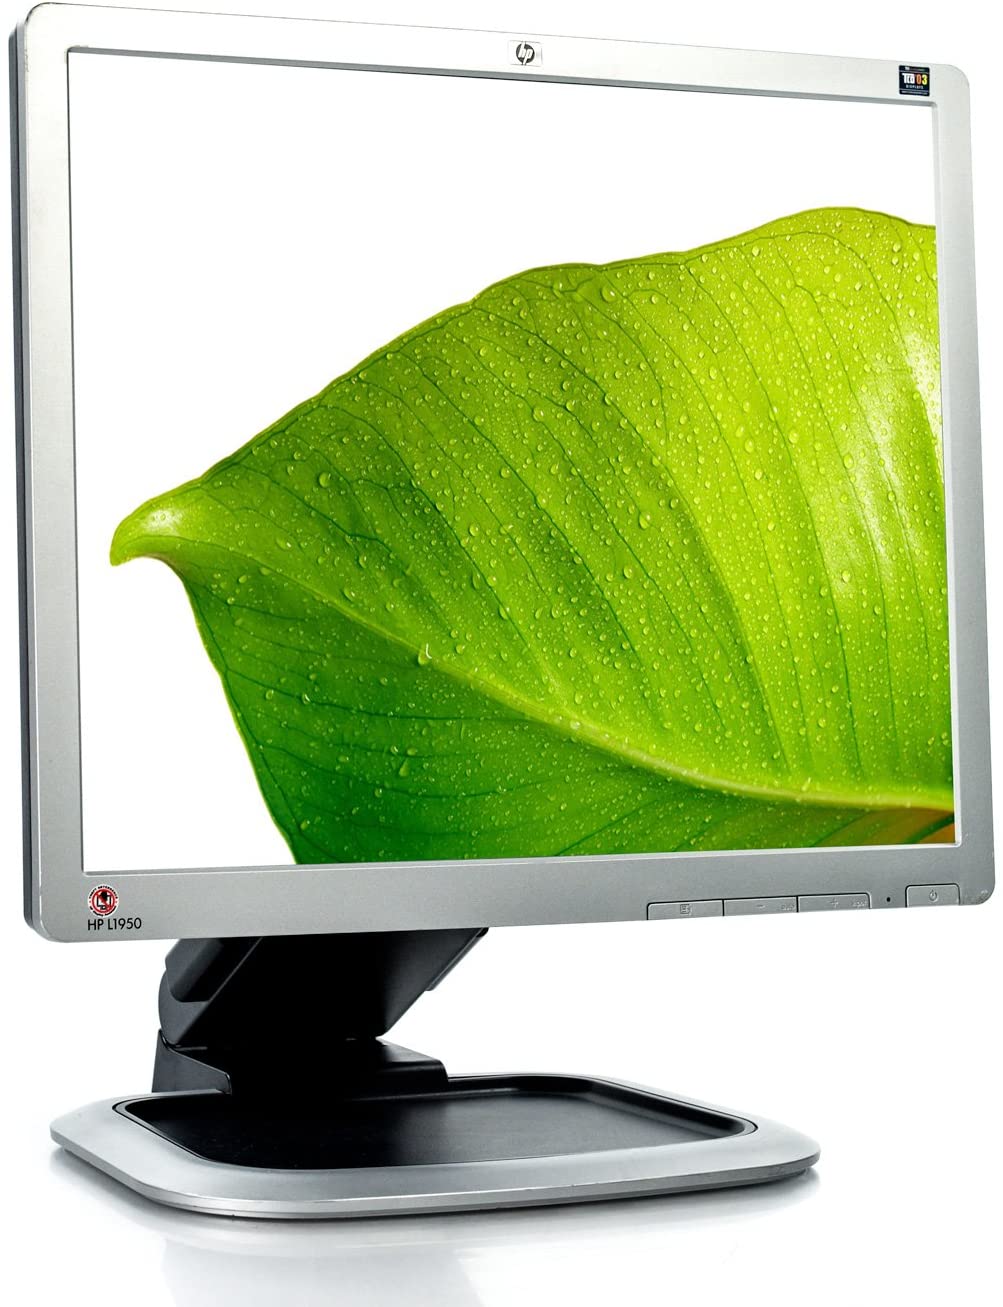 HP L1950g LCD Monitor 19